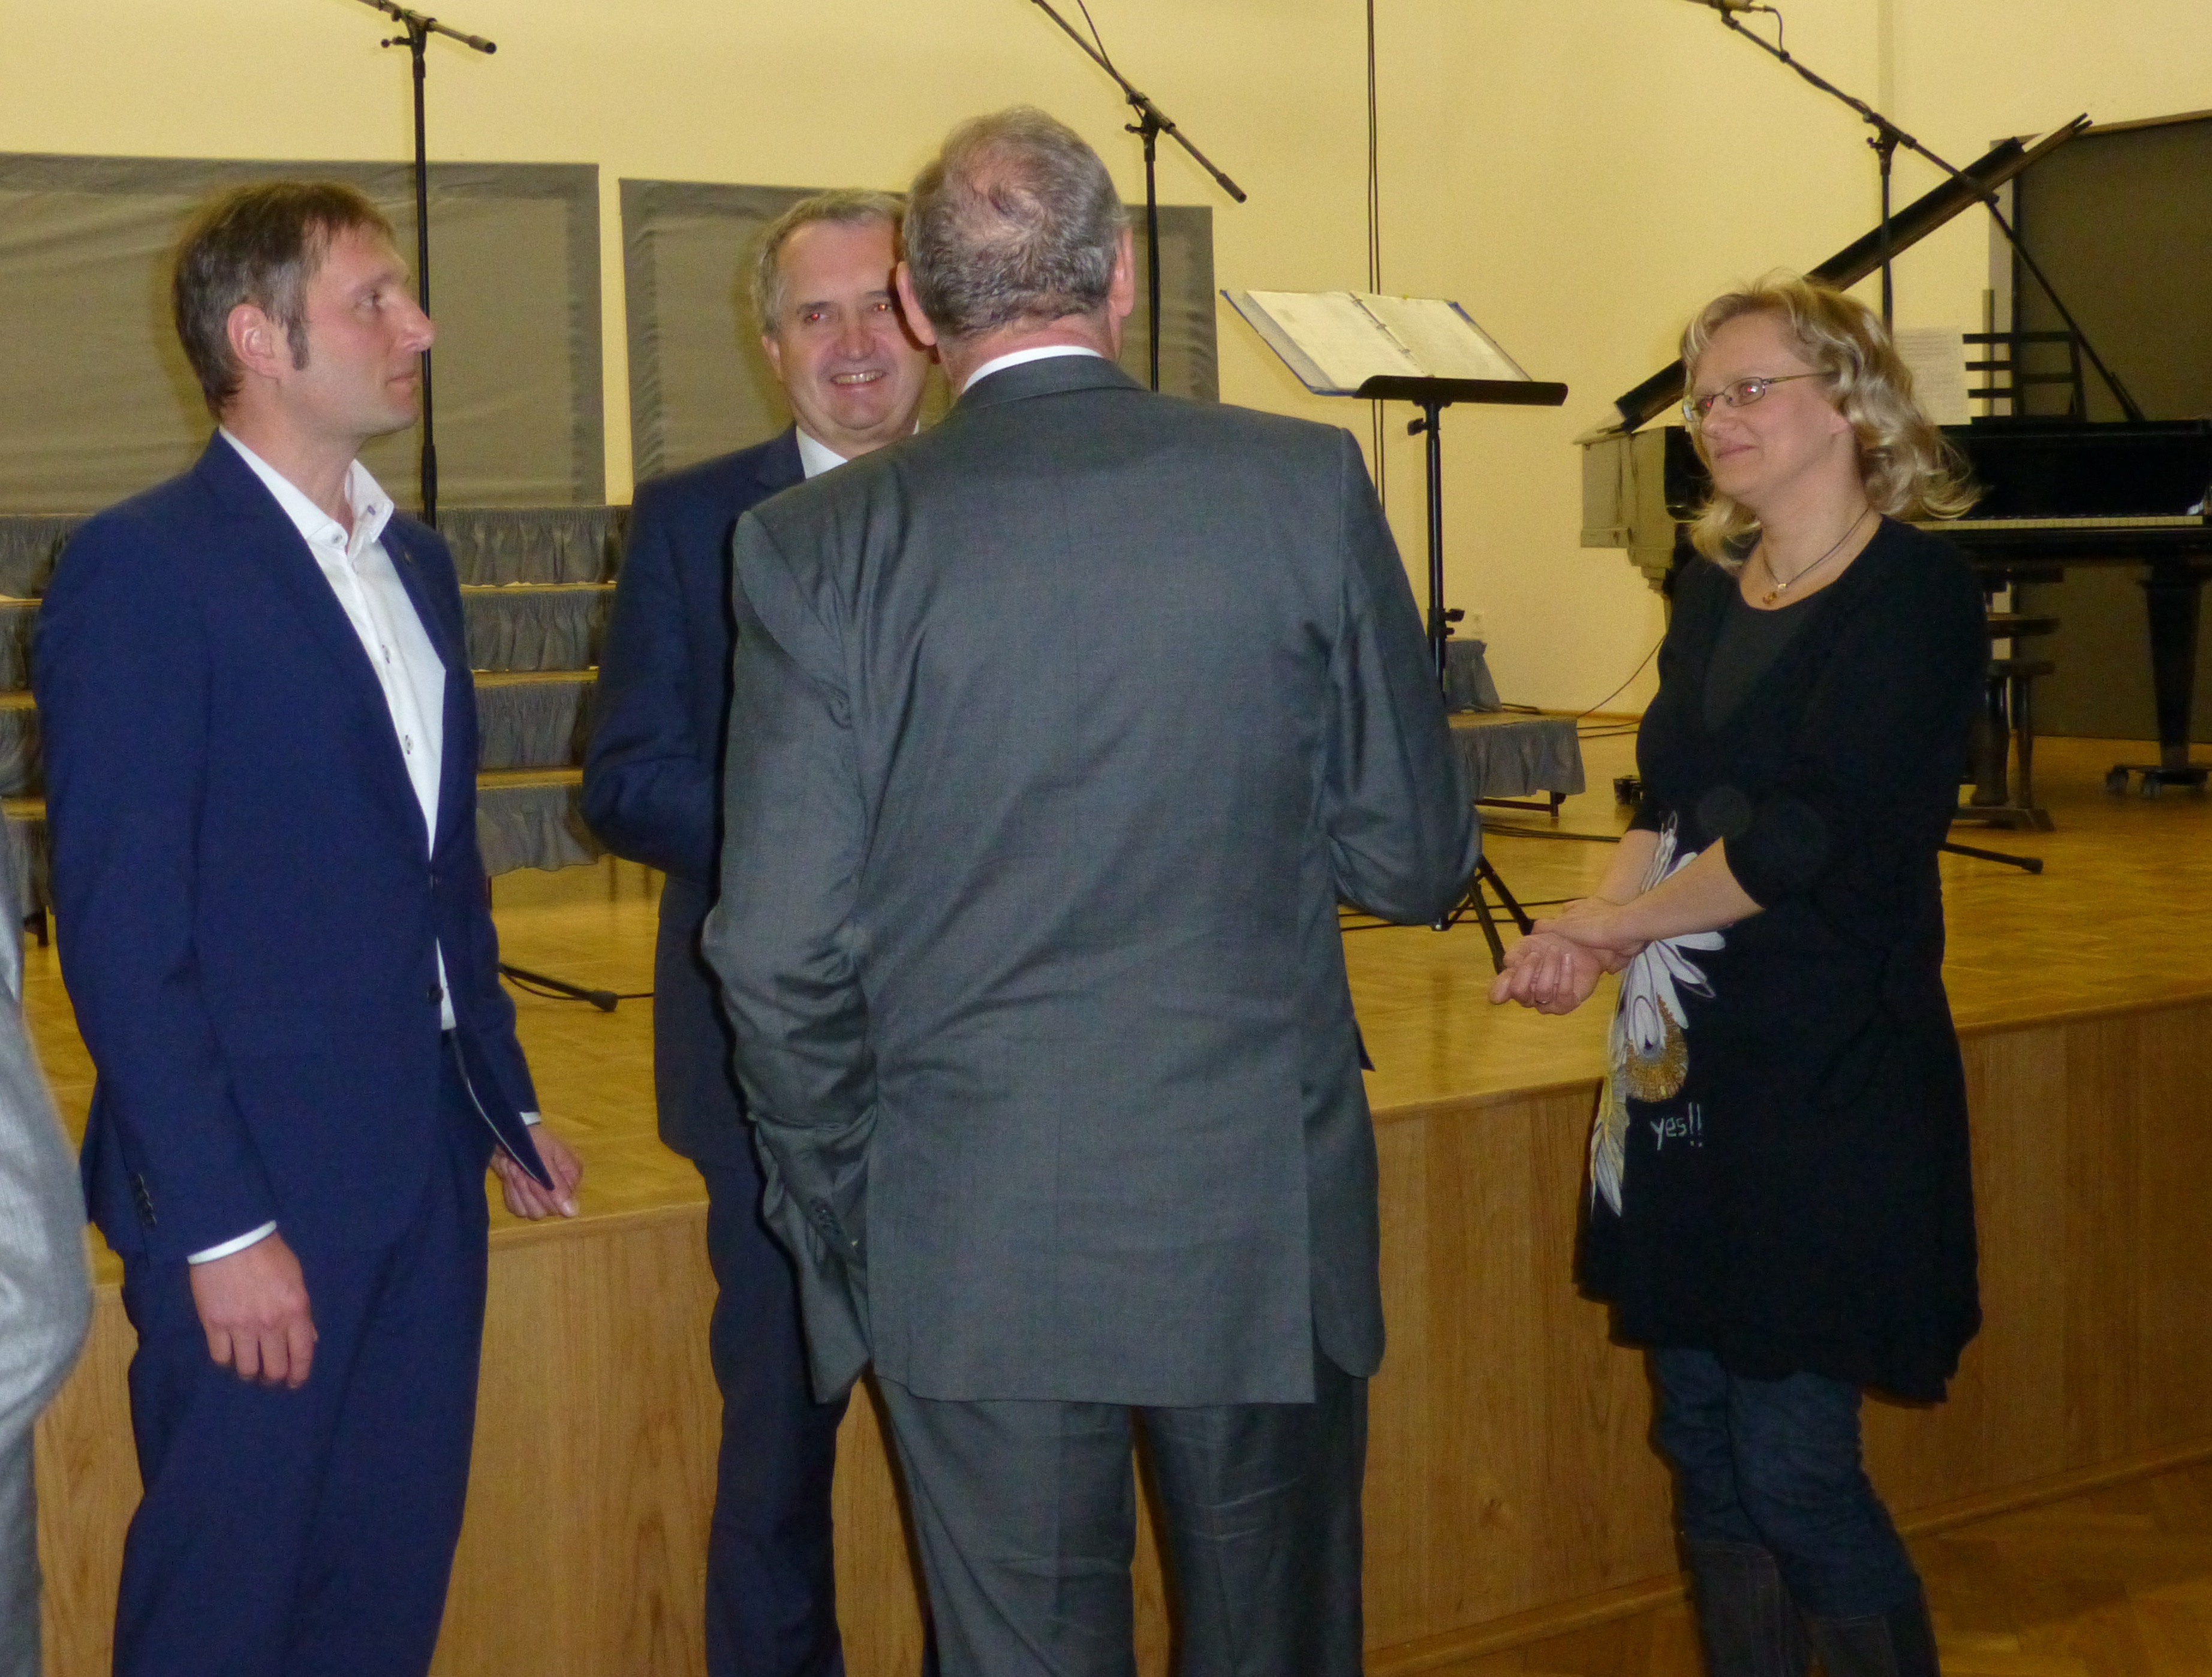 Der Wahlkreisabgeordnete und Staatsminister Thomas Schmidt im Gespräch mit Oberbürgermeister Dehne, Bürgermeister Ahnert sowie Jana Ahnert. (v.l.n.r.)